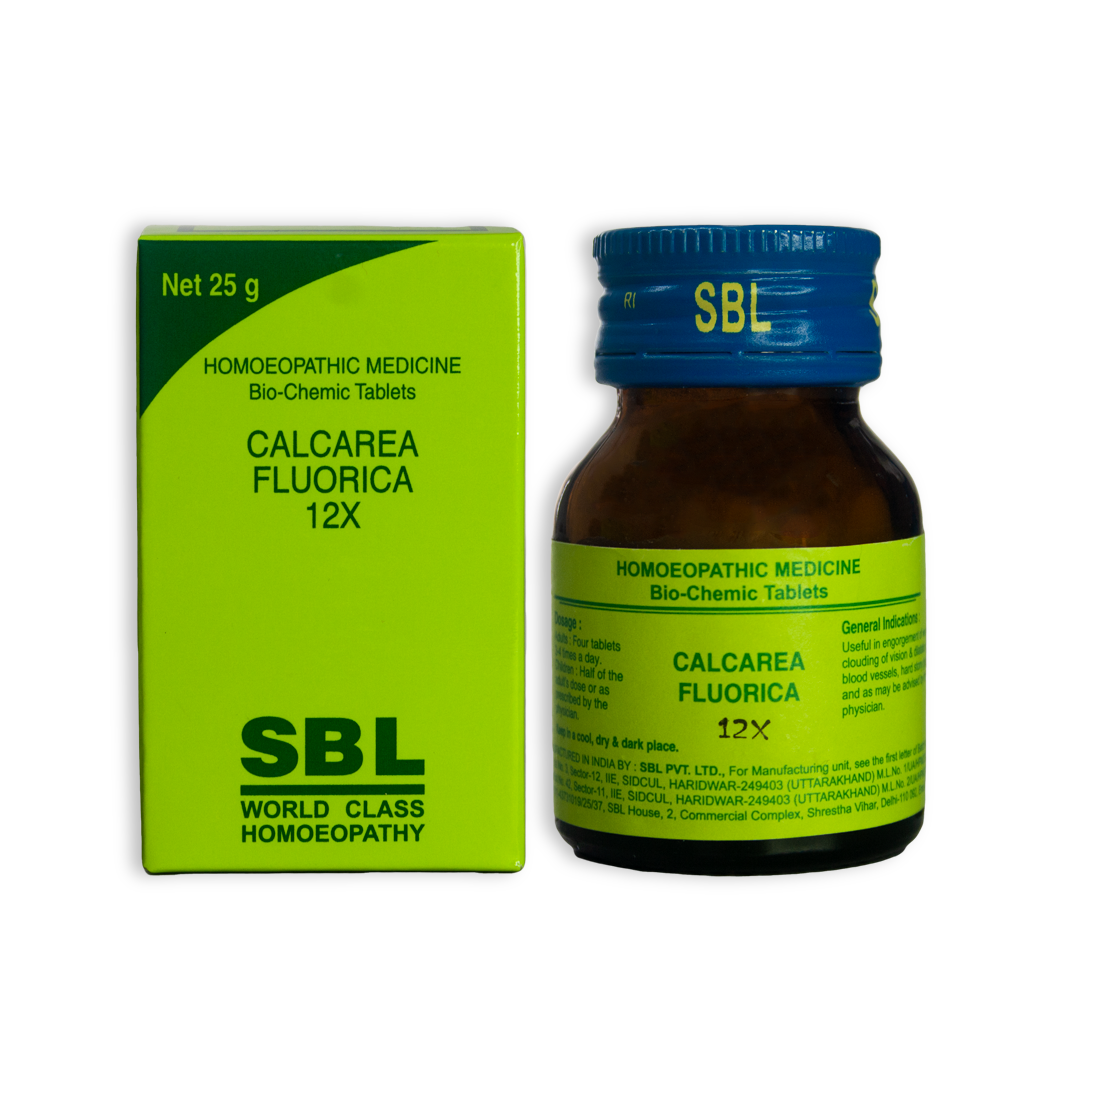 Calcarea Fluorica12X Bottle of 25 GM